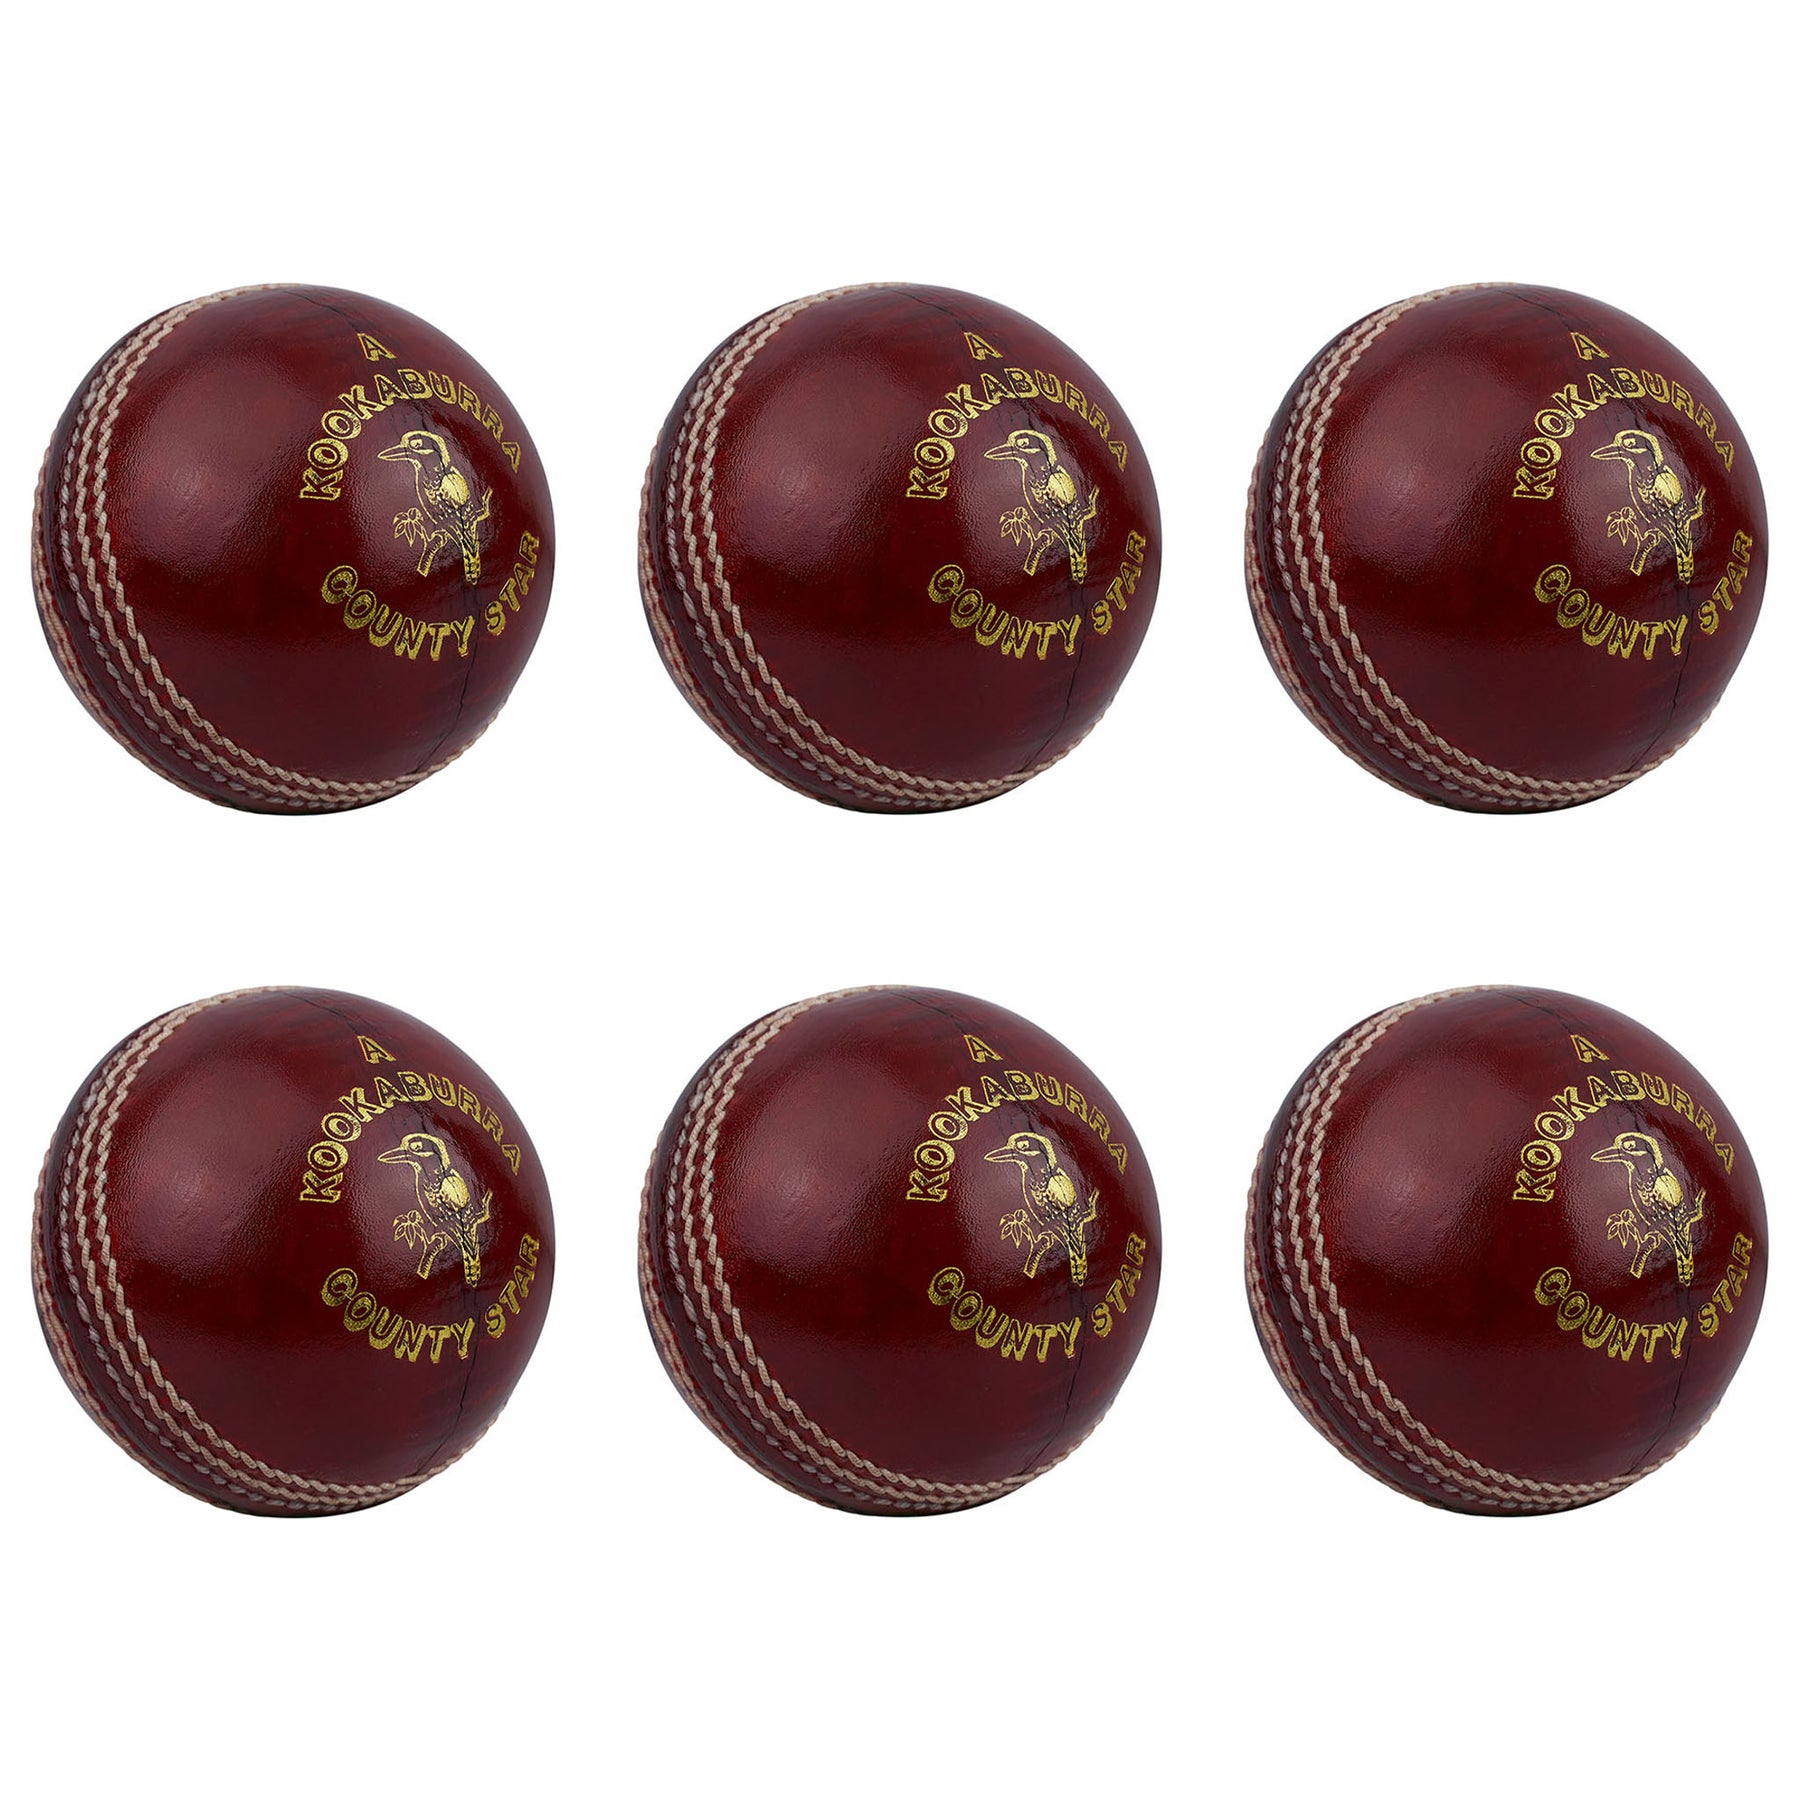 Kookaburra County Star Cricket Ball 5 1/2 oz Box of 6